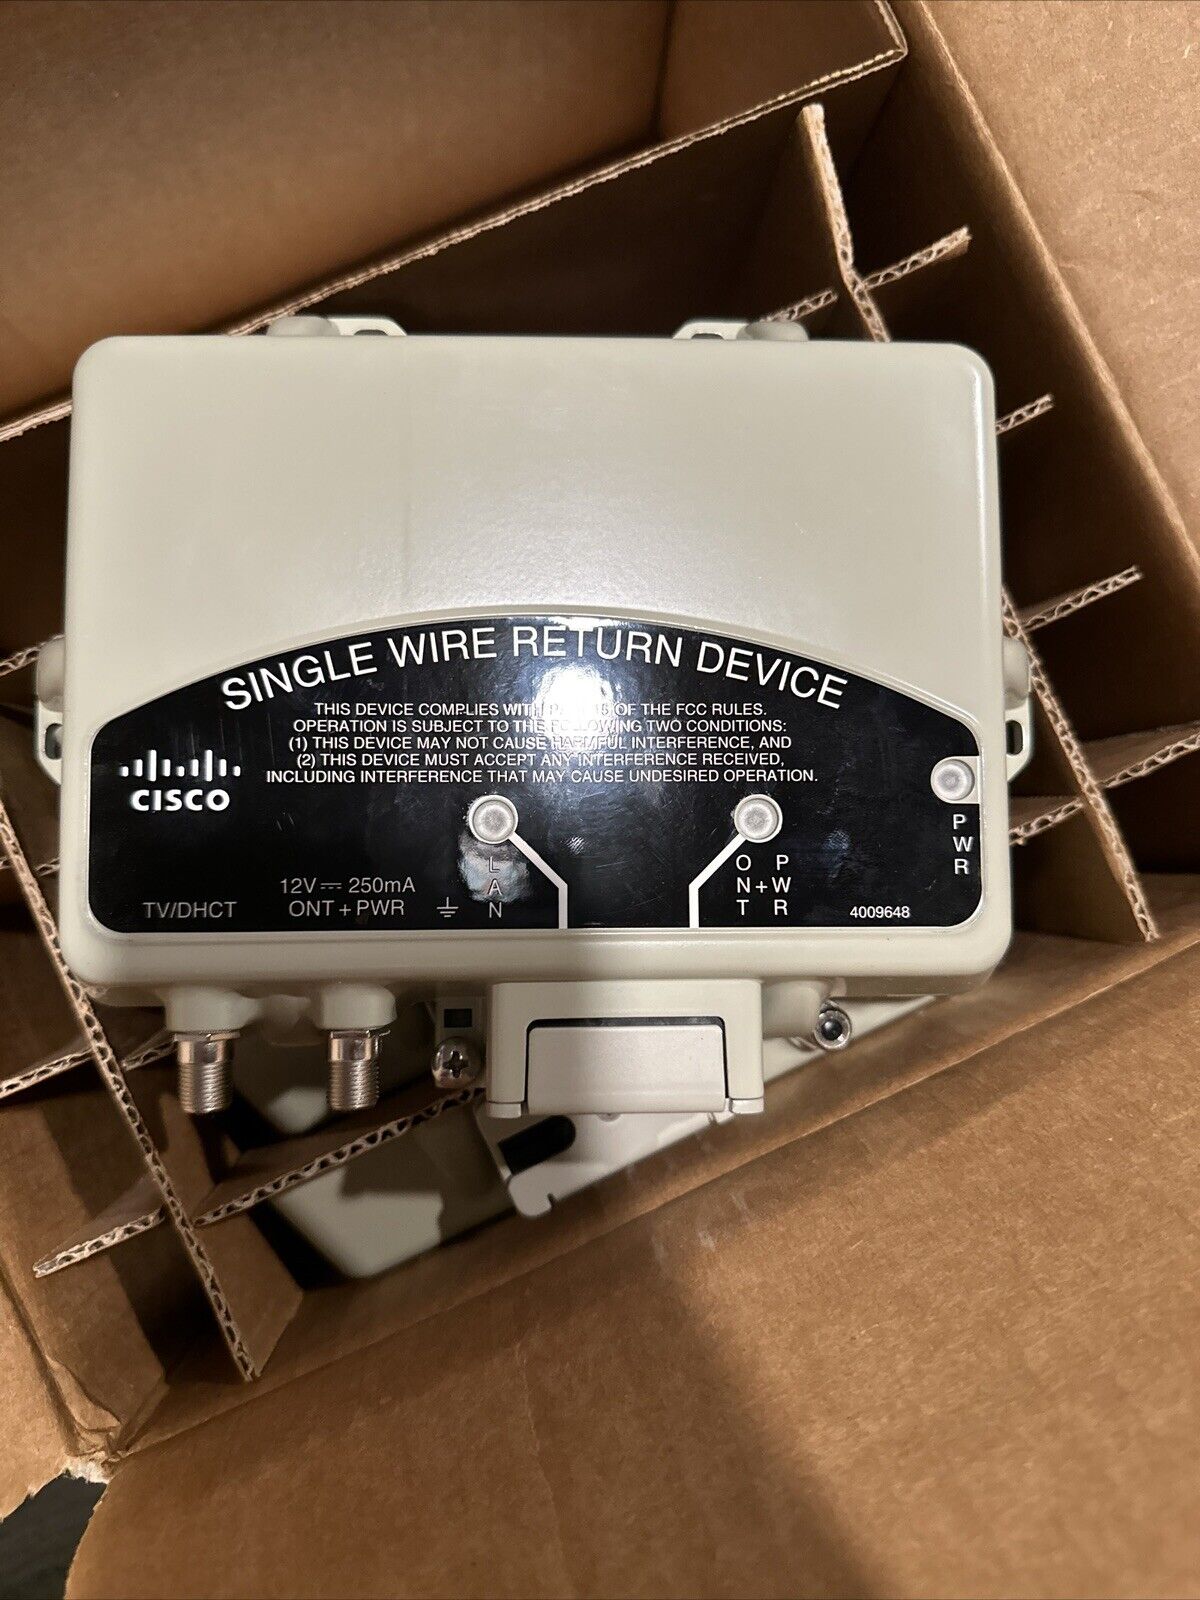 NEW Cisco Single Wire Return Device (SWRD) 4009648. ~5 Units Per Box Lot